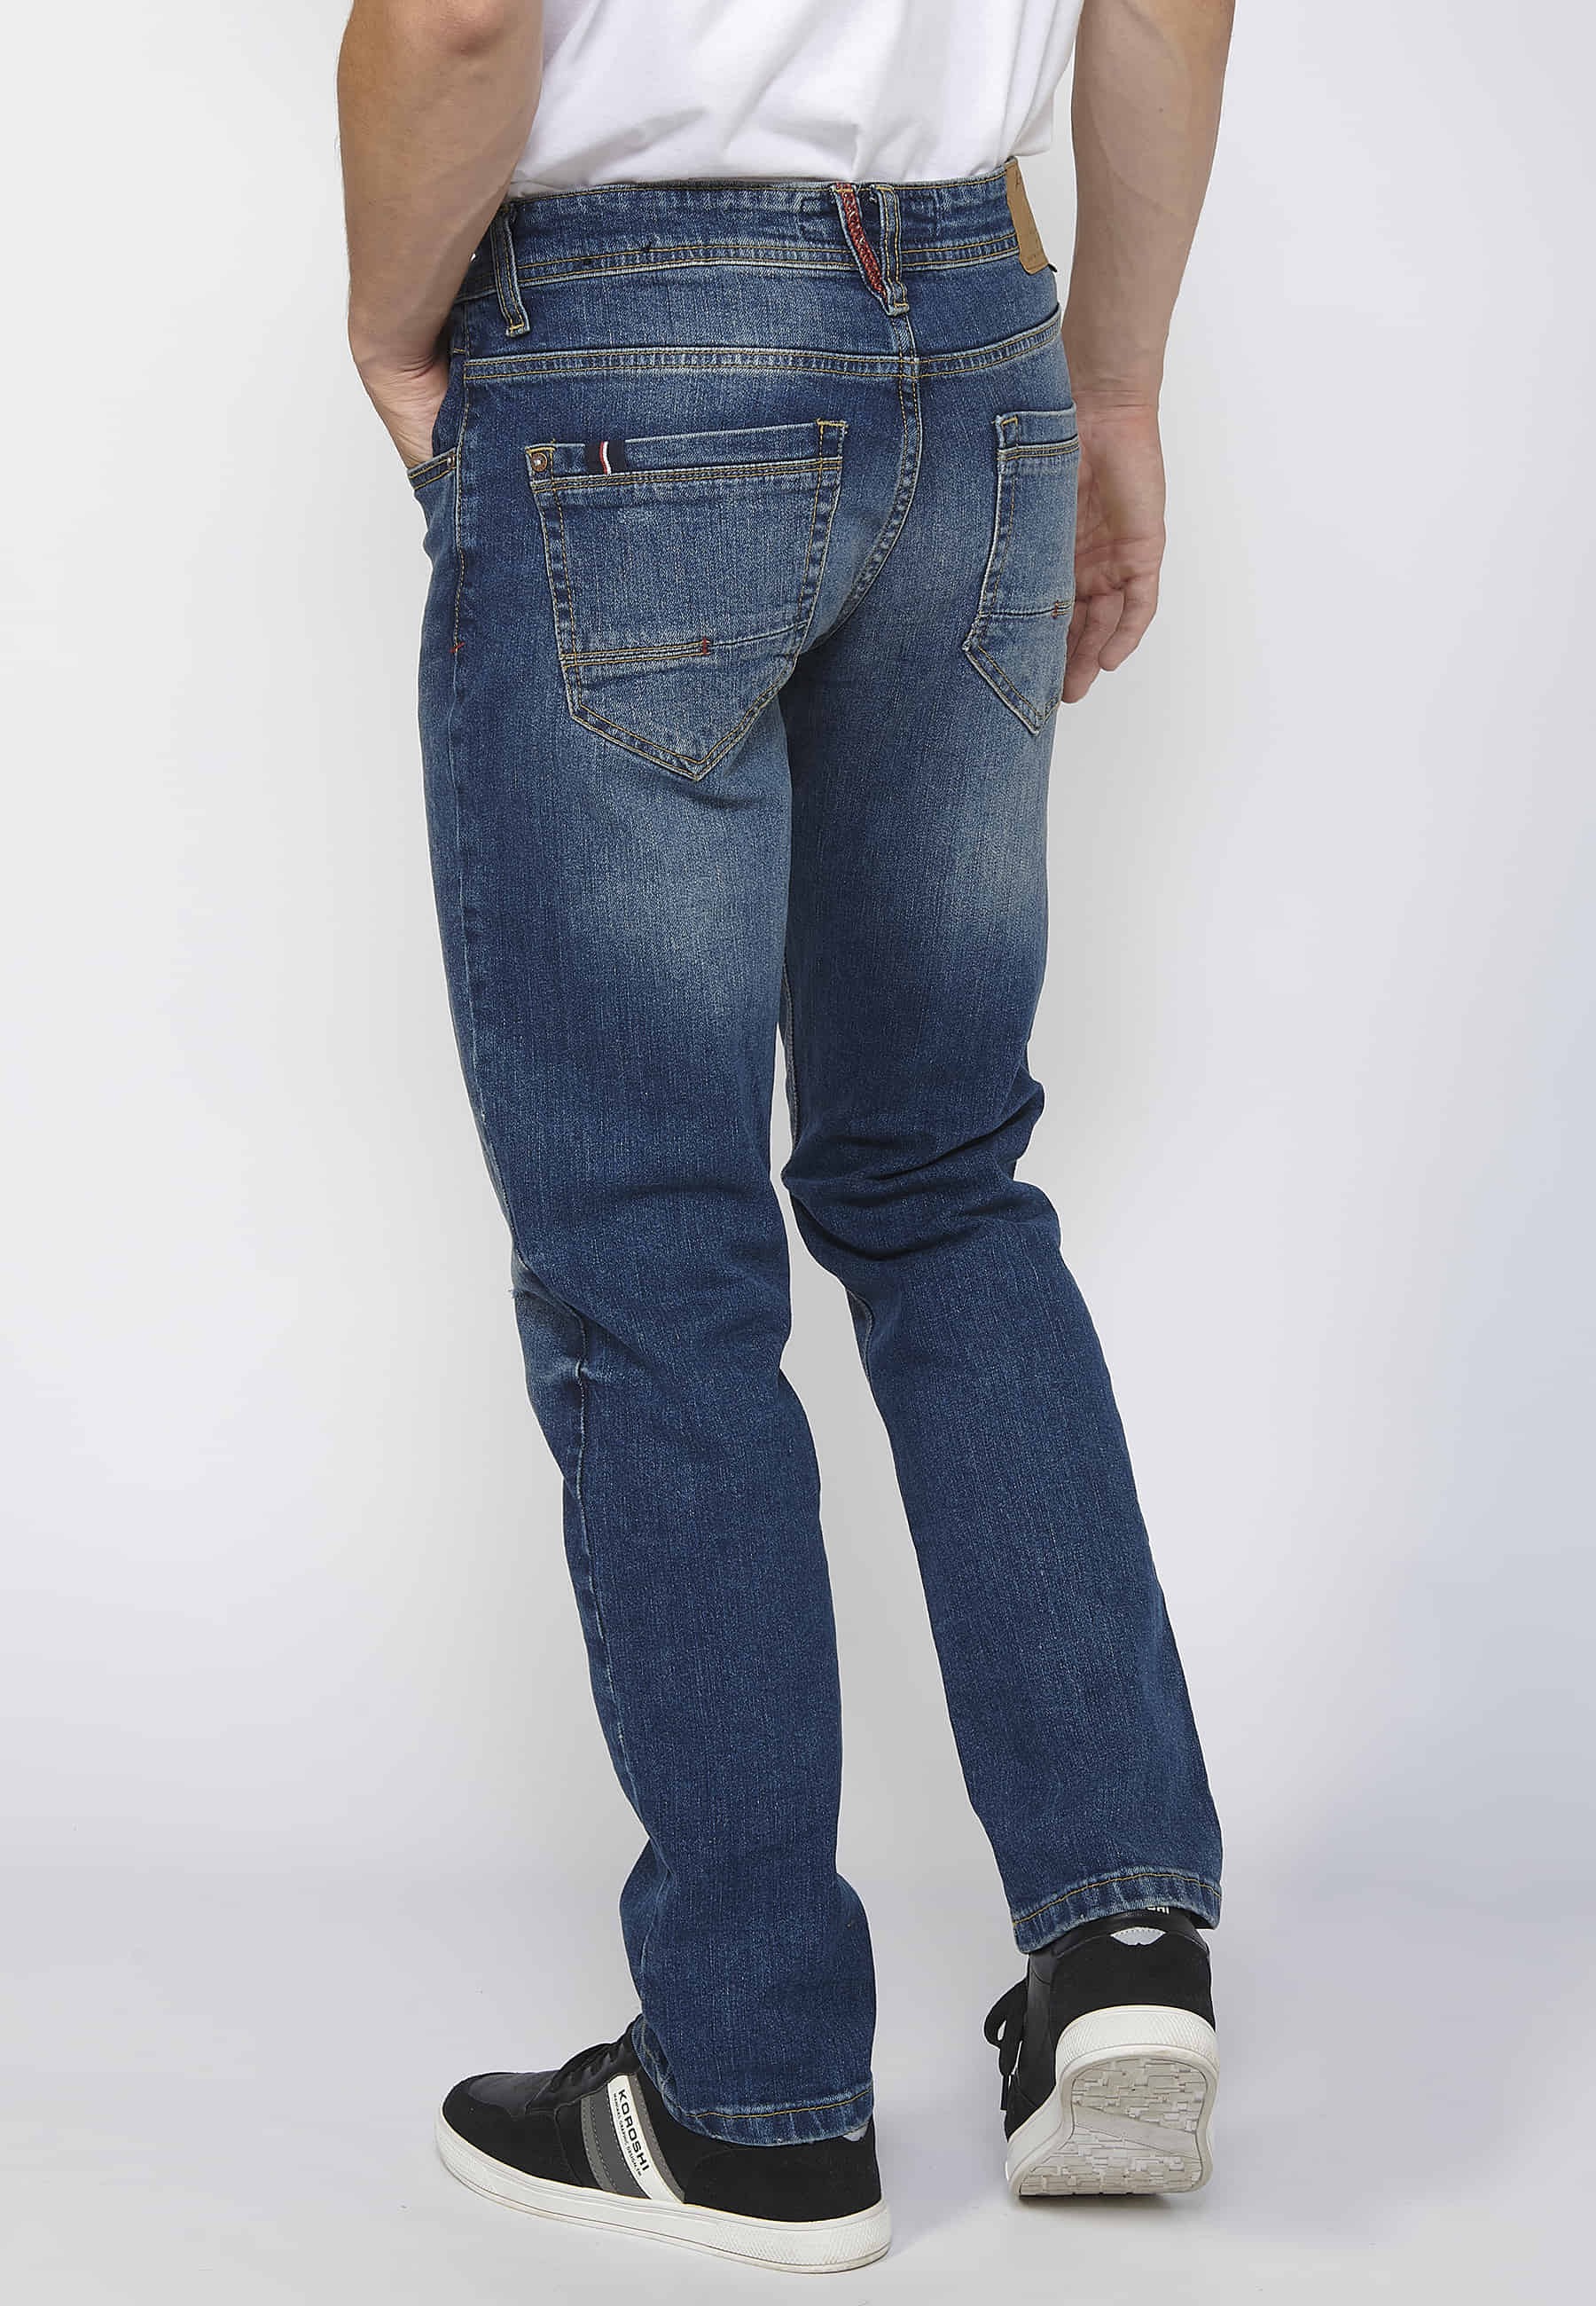 Pantalons llargs denim straigtht regular fit amb tancament davanter amb cremallera i botó color blau per a Home 6